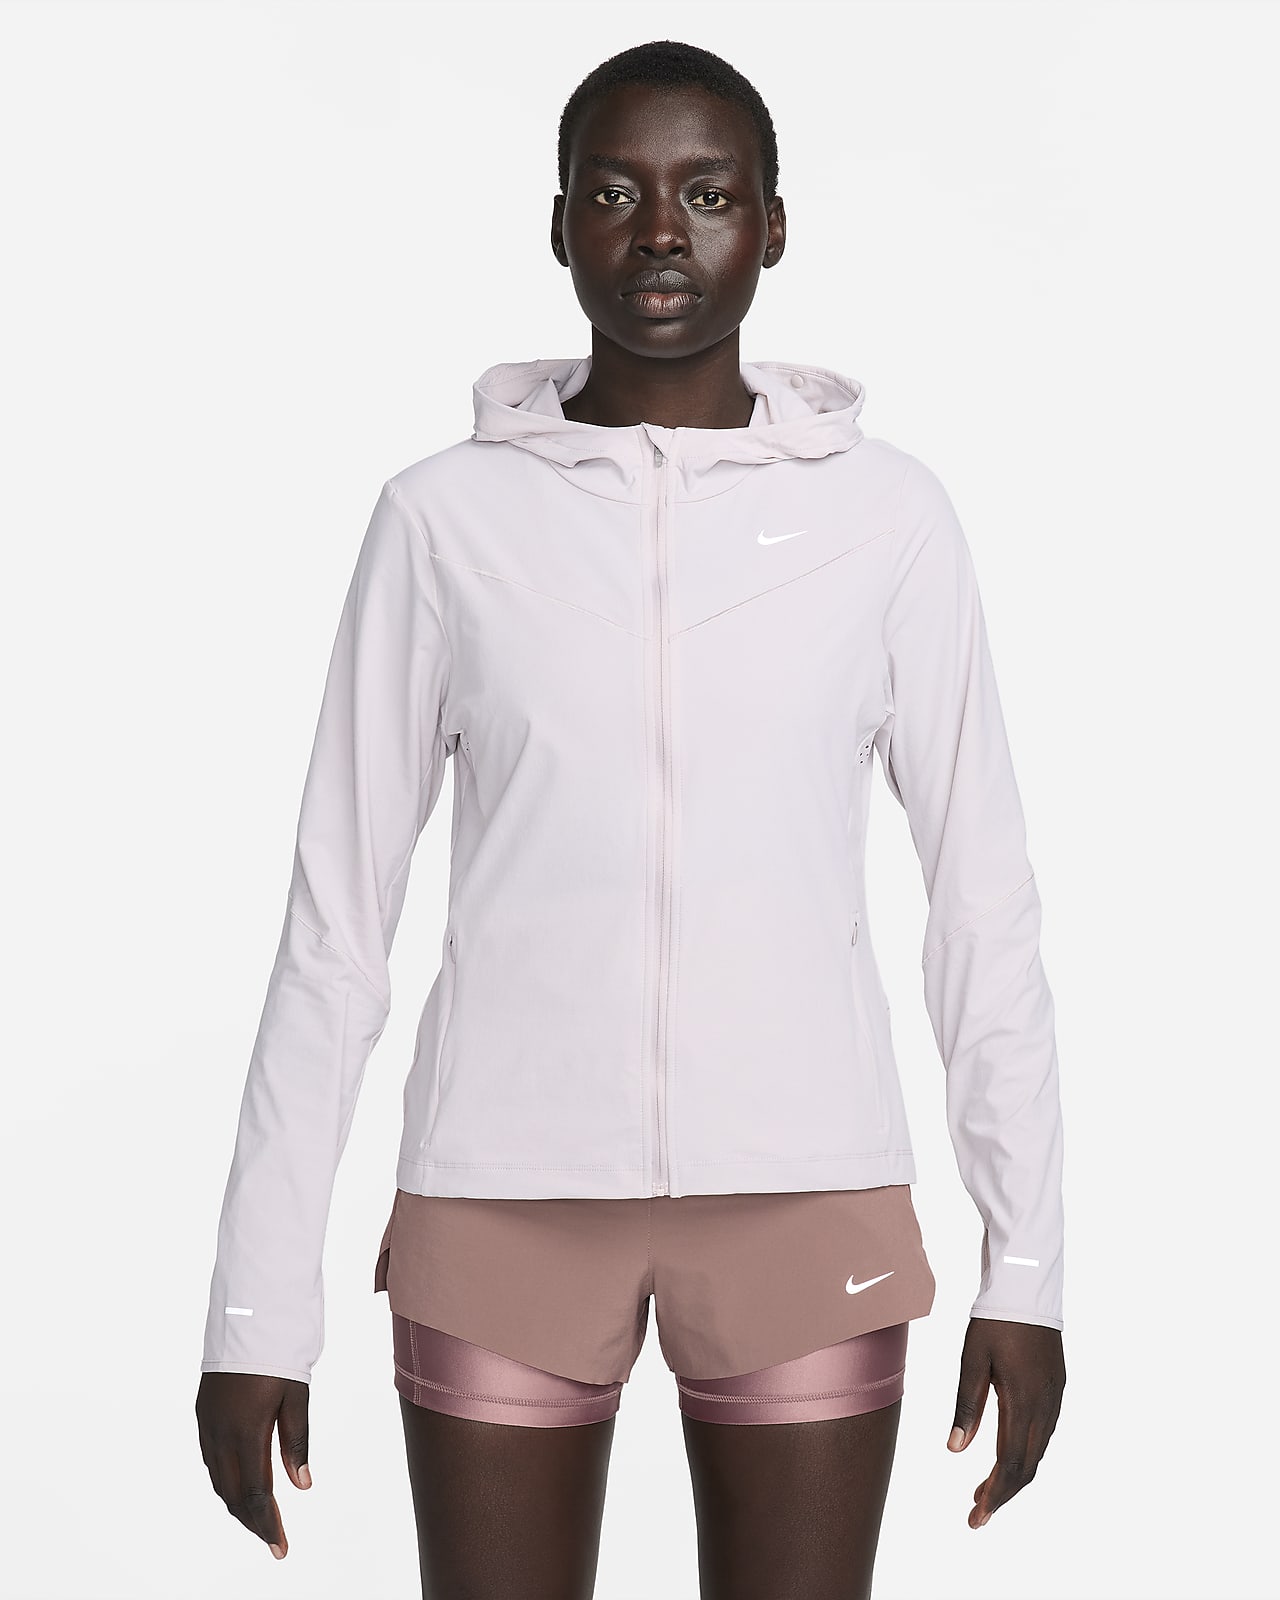 Löparjacka Nike Swift UV för kvinnor